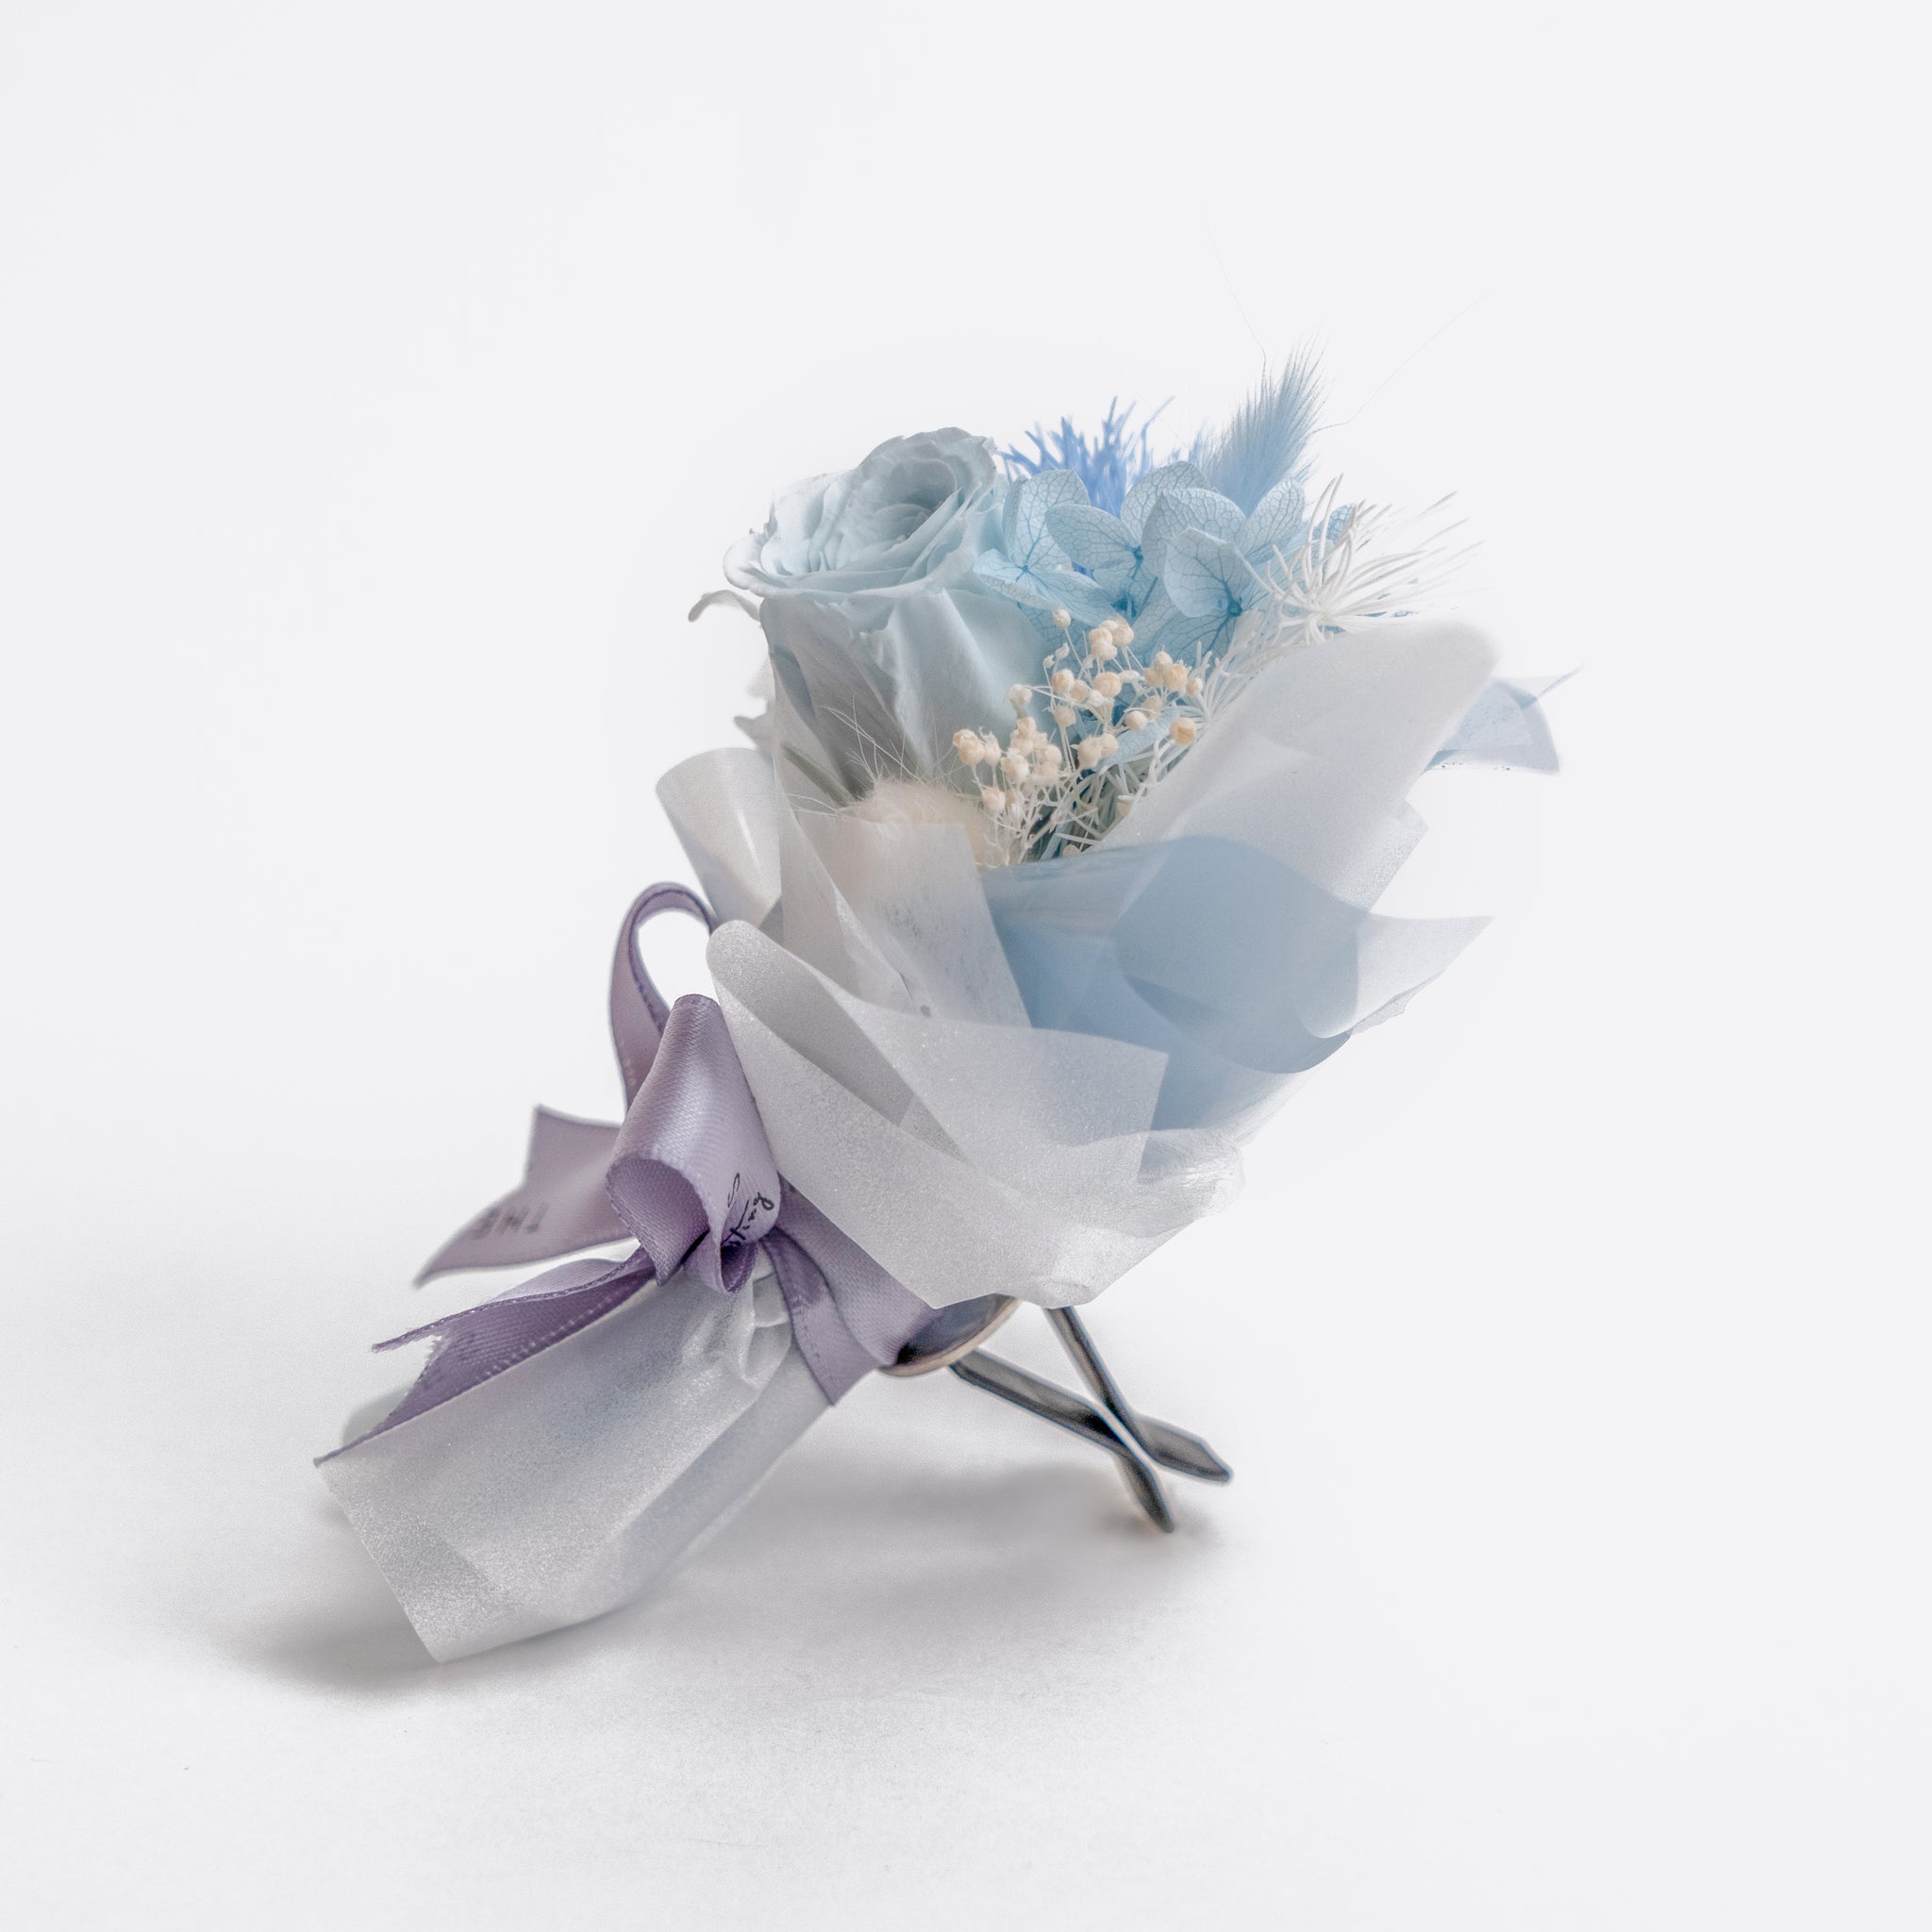 Mini Flower Bouquet Car Vent Decor - Blue Rose